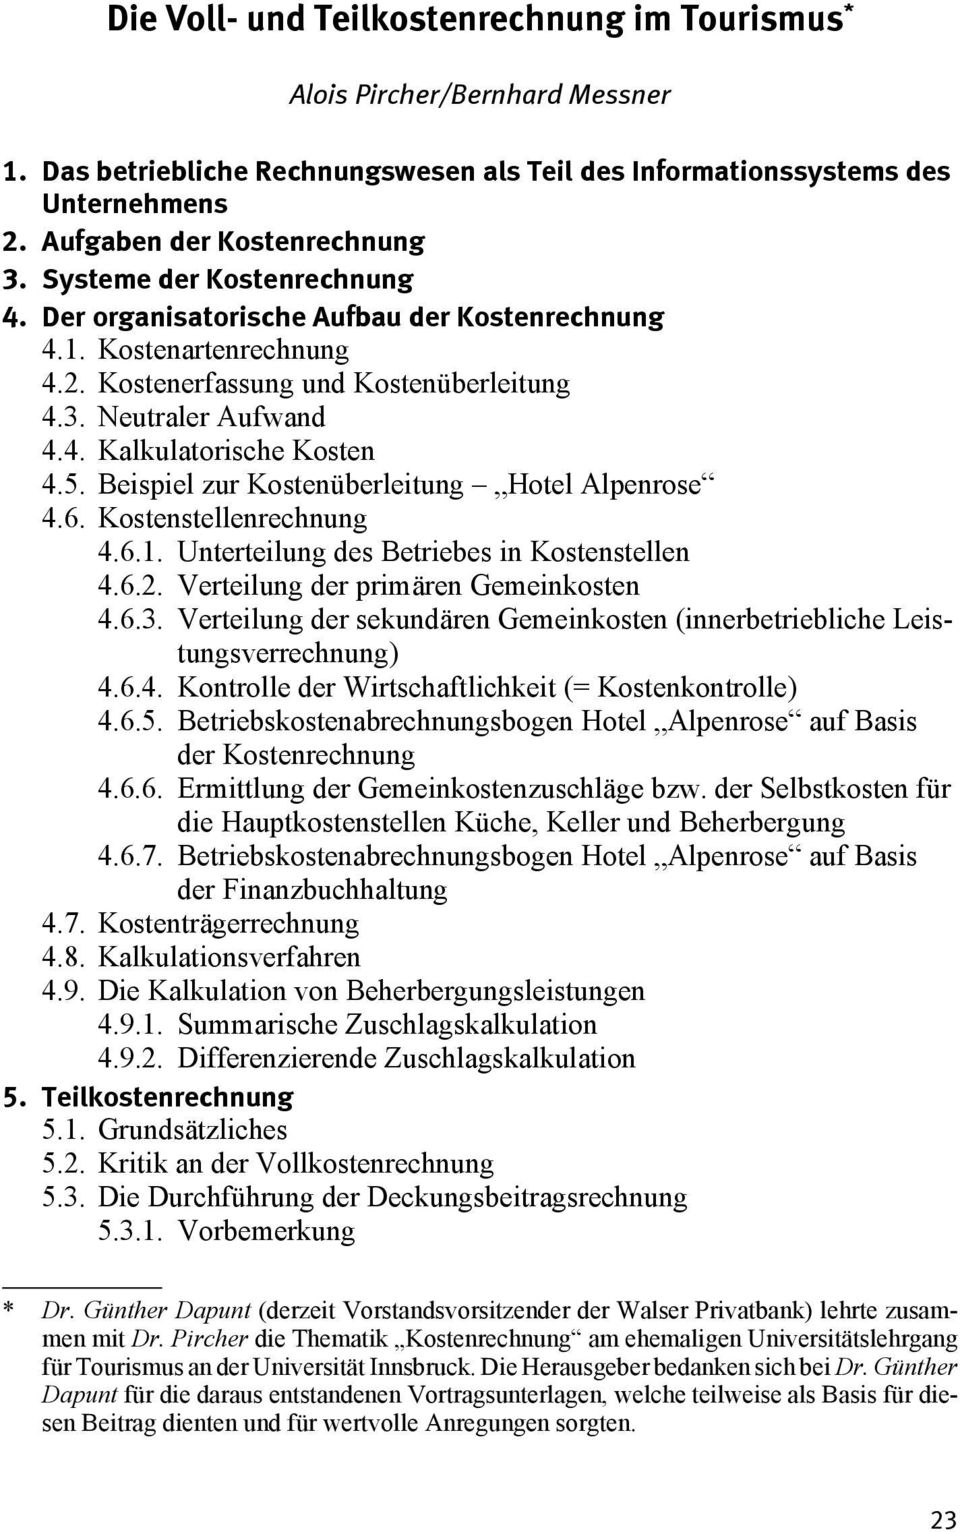 Beispiel zur Kostenüberleitung Hotel Alpenrose 4.6. Kostenstellenrechnung 4.6.1. Unterteilung des Betriebes in Kostenstellen 4.6.2. Verteilung der primären Gemeinkosten 4.6.3.